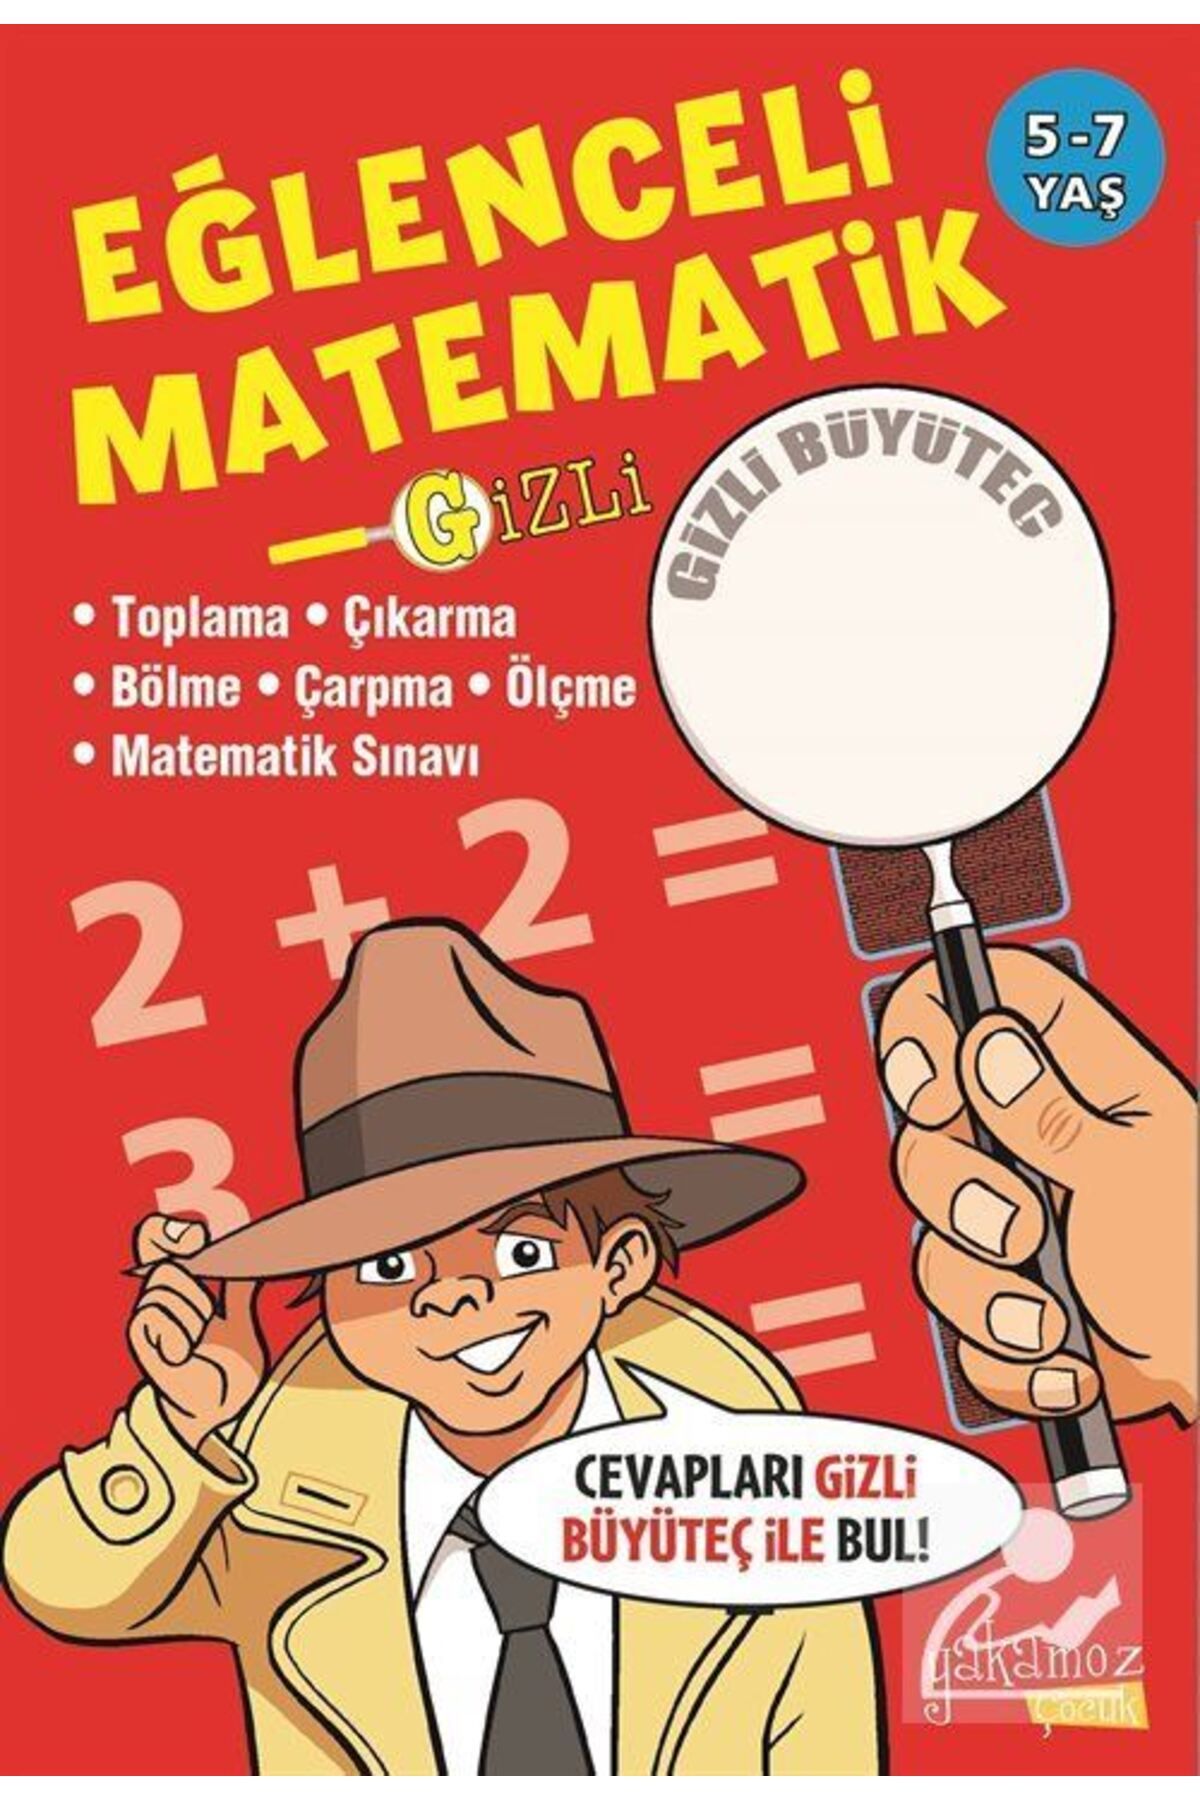 Yakamoz Yayınları Gizli Eğlenceli Matematik